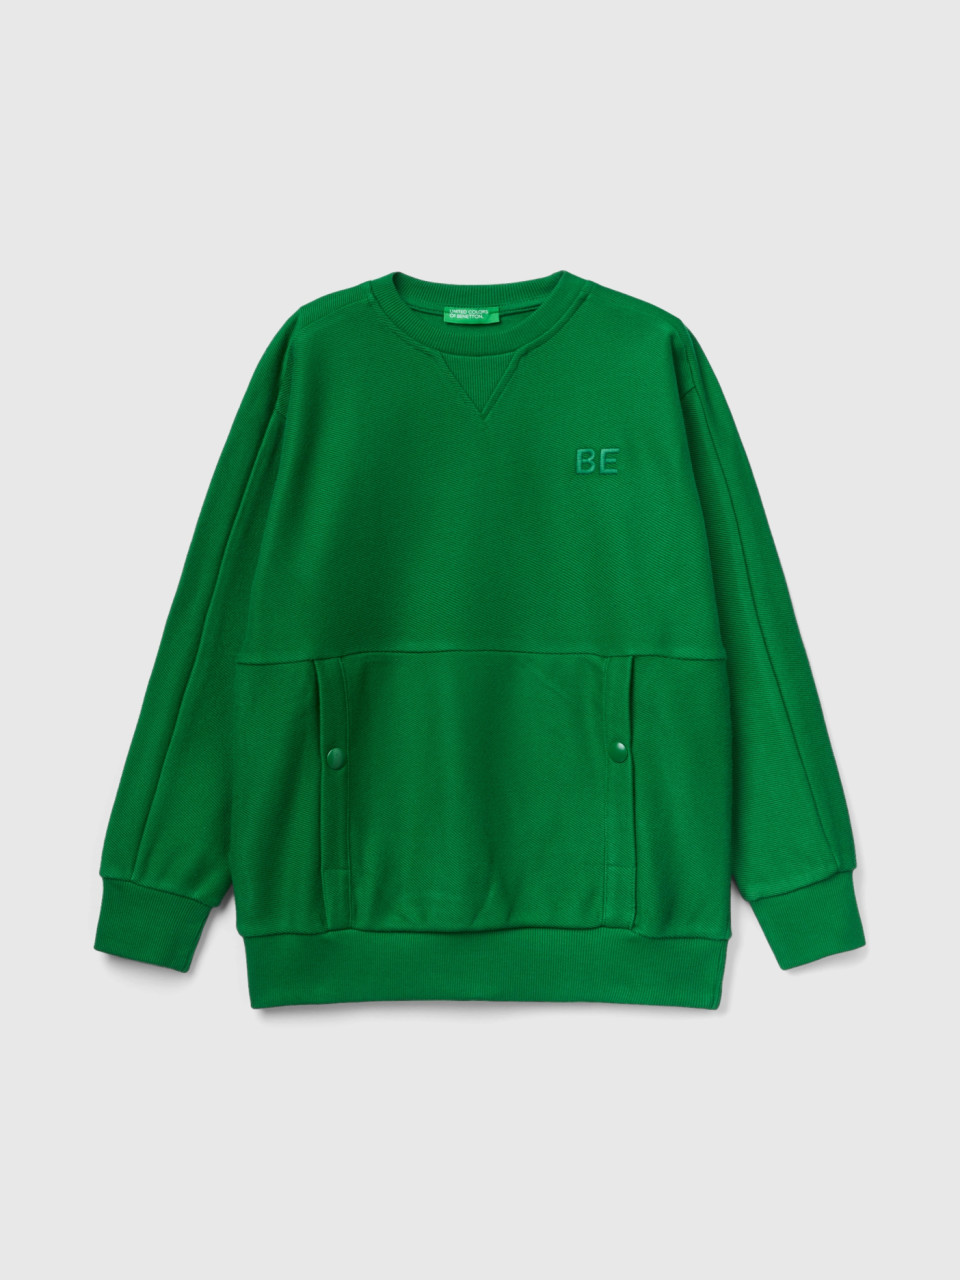 Benetton, Sweatshirt Mit Taschen Und be-stickerei, Grün, male